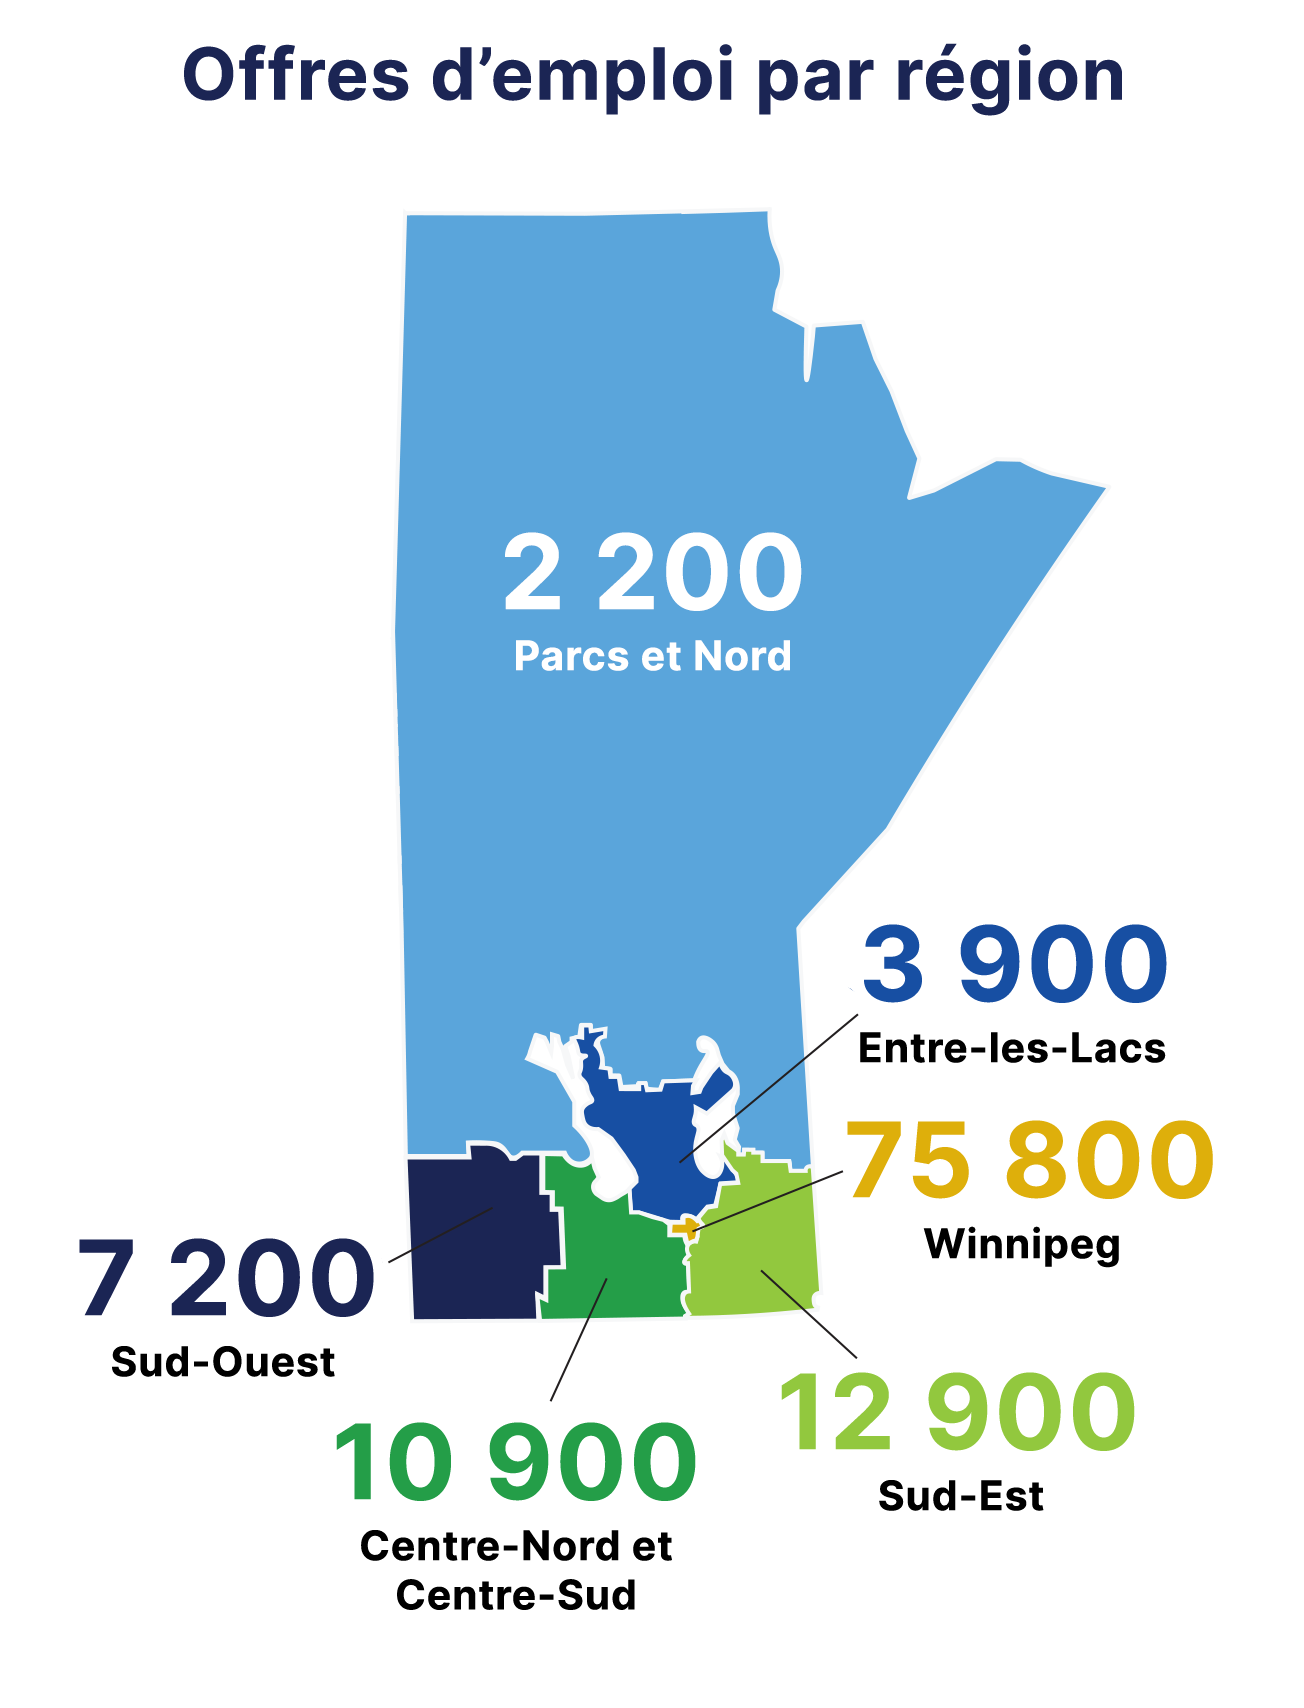 Offres d’emploi par région : 2 200 – Parcs et Nord; 3 900 – Entre-les-Lacs; 7 200 – Sud-Ouest; 75 800 – Winnipeg; 10 900 – Centre-Nord et Centre-Sud; 12 900 – Sud-Est